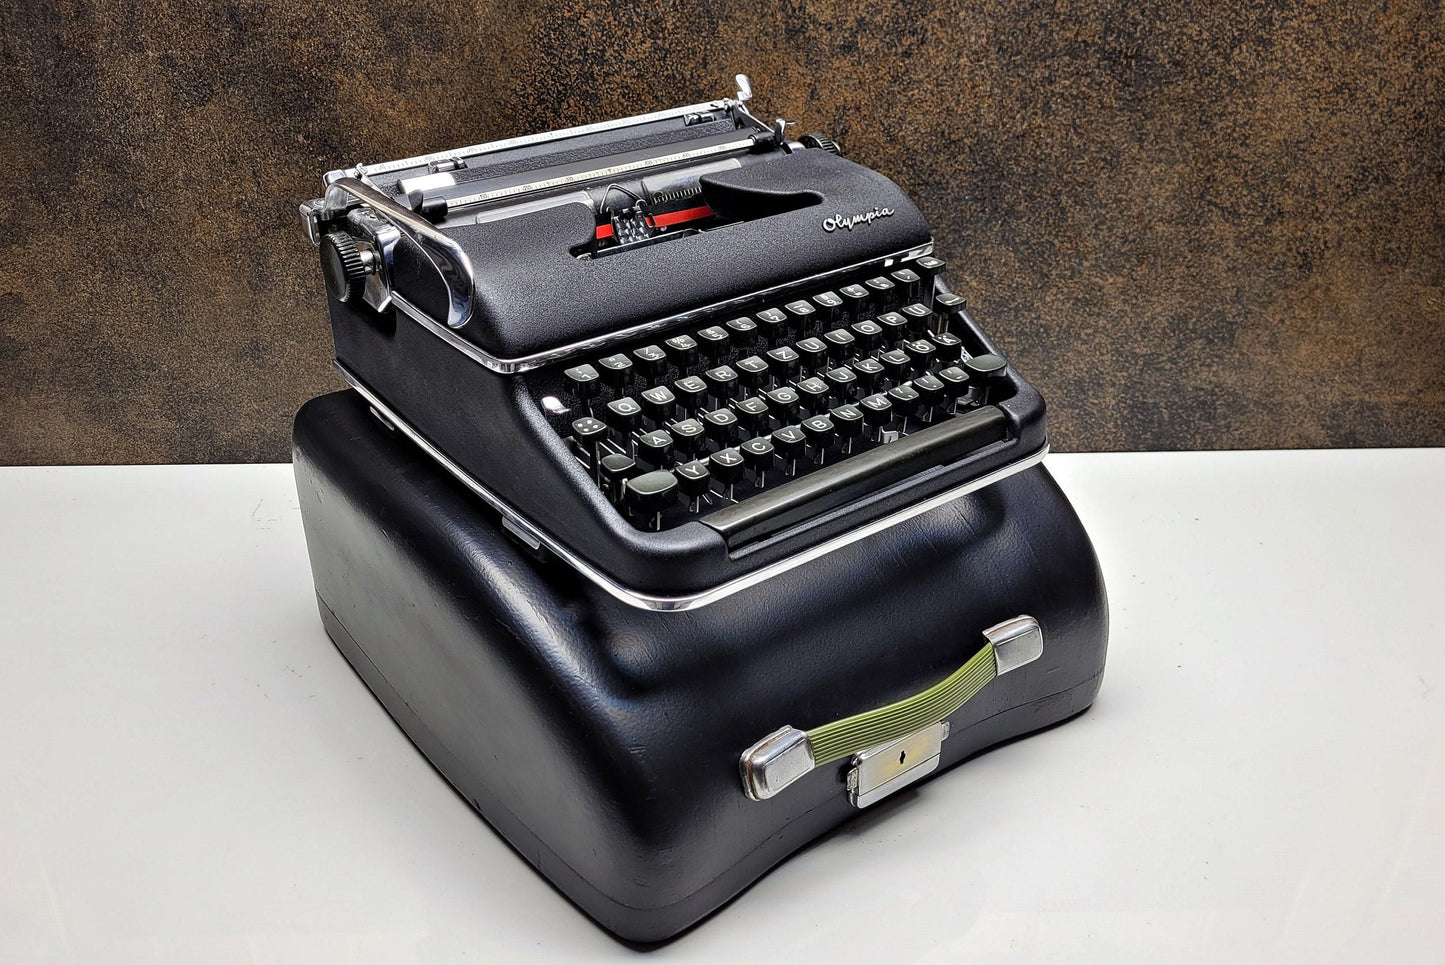 Olympia SM3 Black Typewriter + Black Bag - Premium Gift / Typewriter World / The Most Special Gift,typewriter working